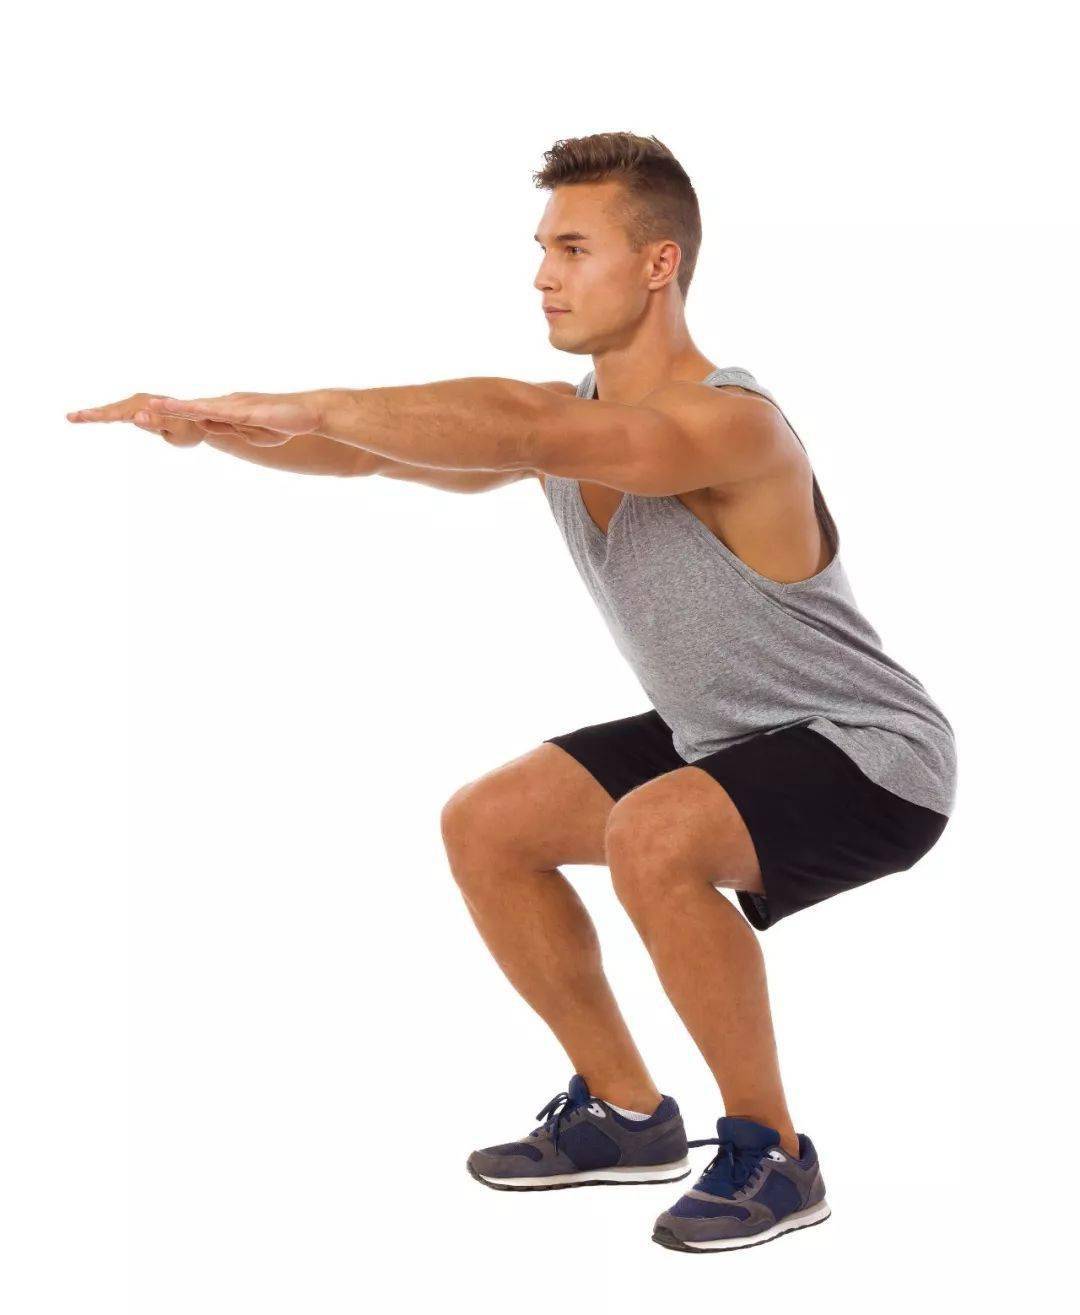 深蹲这个动作看似简单,但如果姿势不标准的话,会损伤臀部,膝盖和脚踝